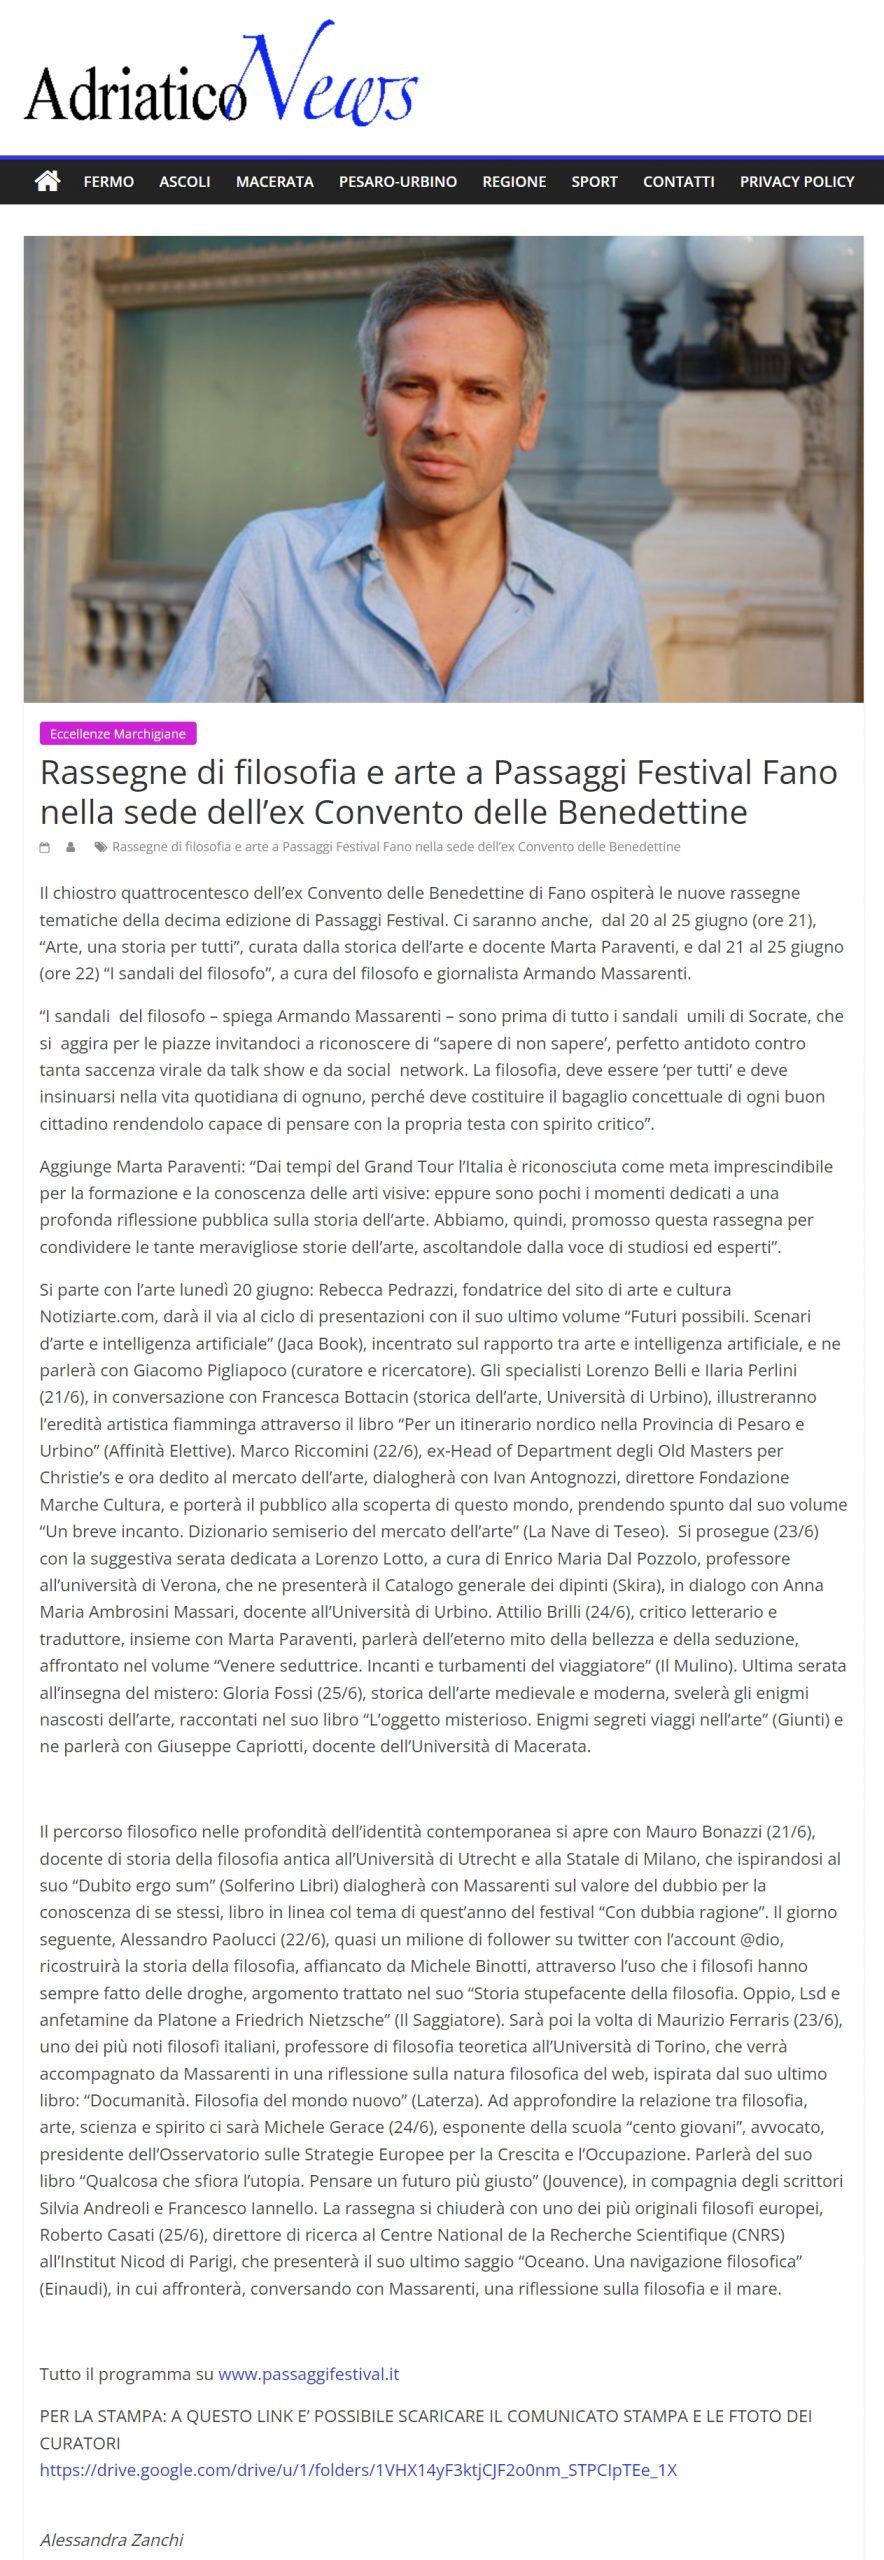 2022-05-31-adriatico-news-rassegne-di-filosofia-e-arte-a-passaggi-festival-fano-nella-sede-dell-ex-convento-delle-benedettine